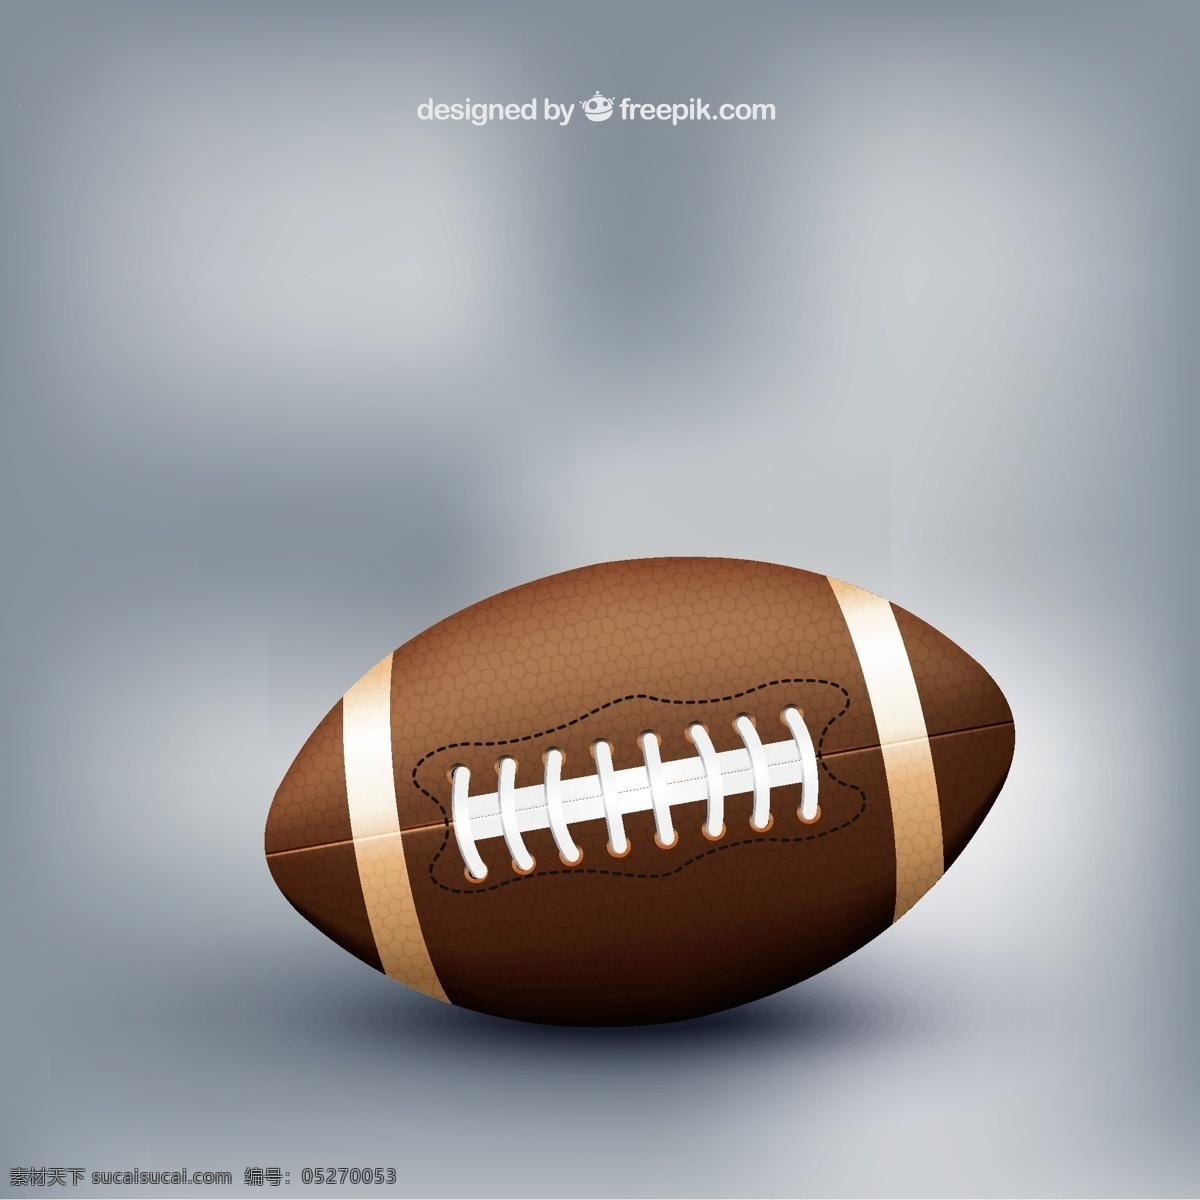 精美 美式 橄榄球 用球 体育用品 灰色